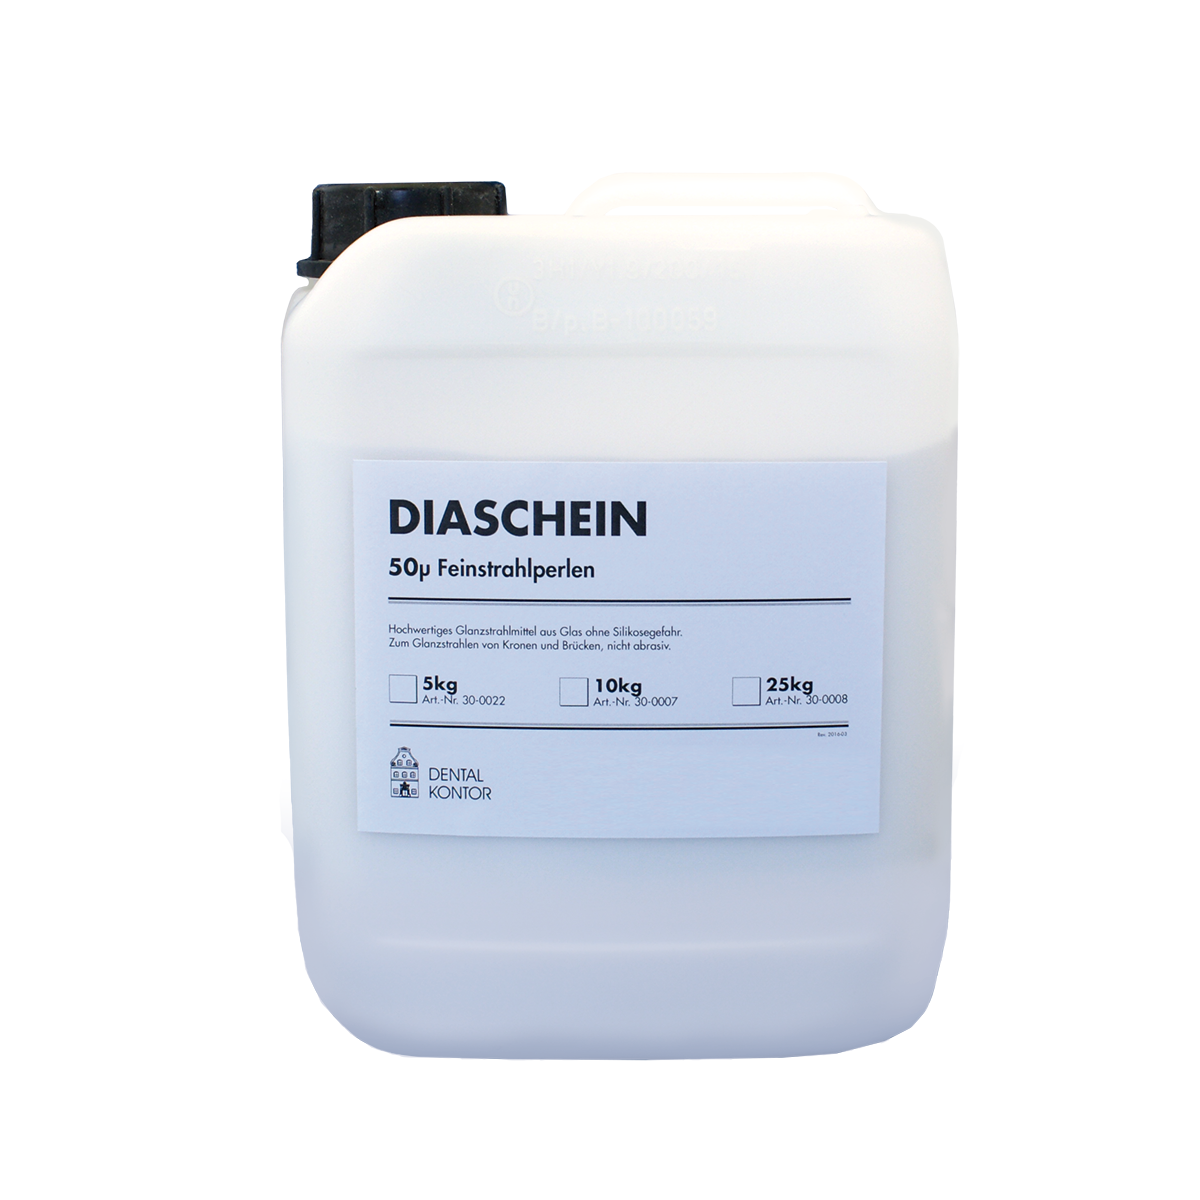 Diaschein 50µ